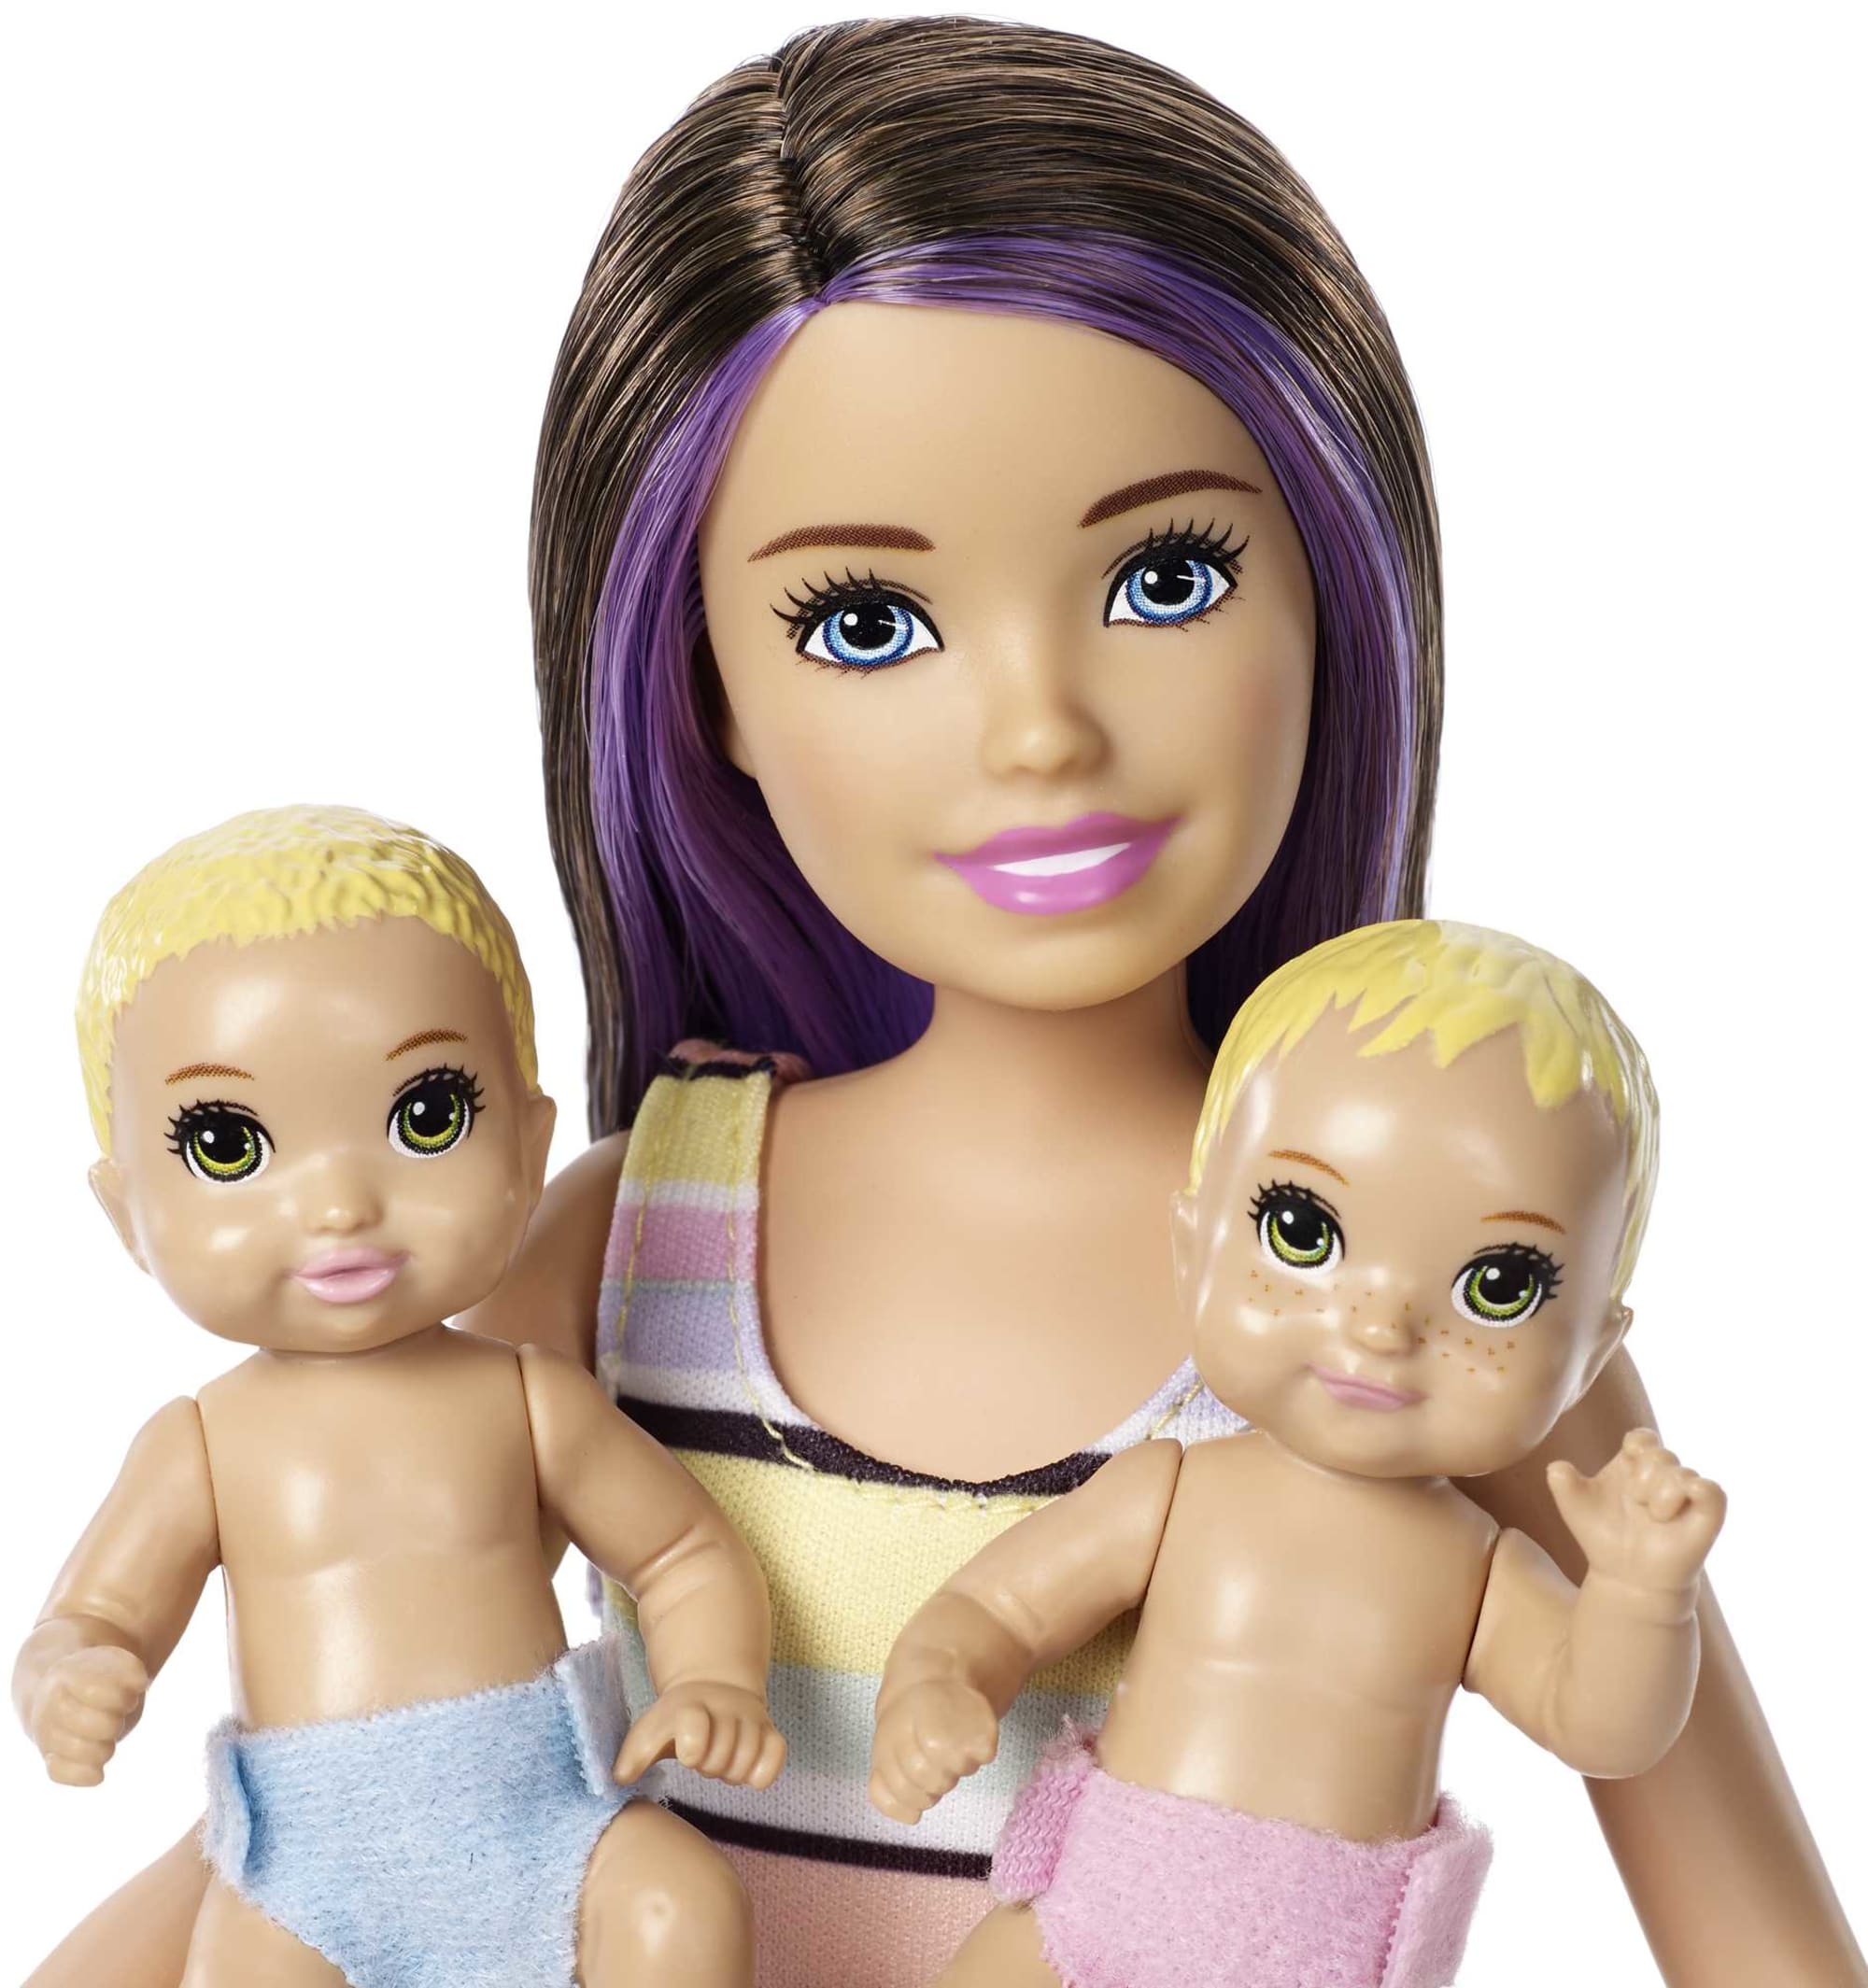 Muñecas y conjunto Nap 'n' Nurture Nursery de Skipper Canguro de bebés Barbie | GFL38 | MATTEL